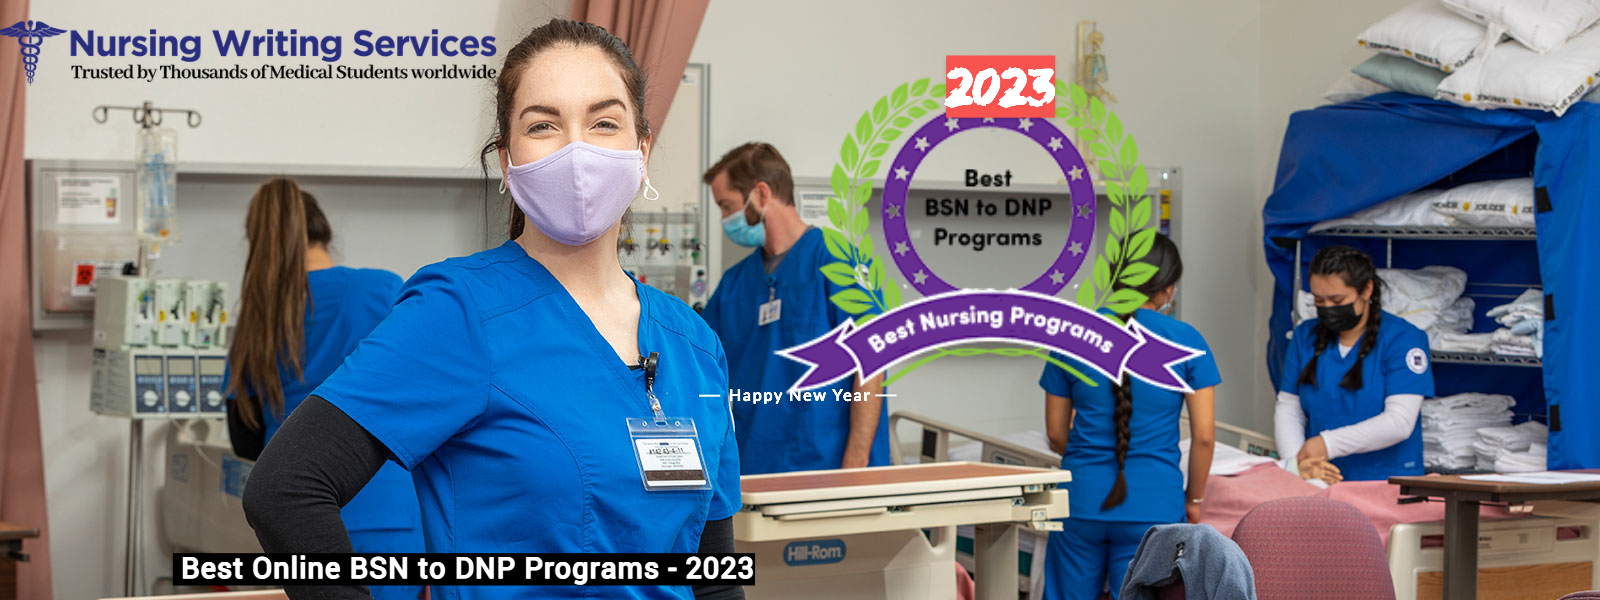  Best Online BSN to DNP Programs - 2023